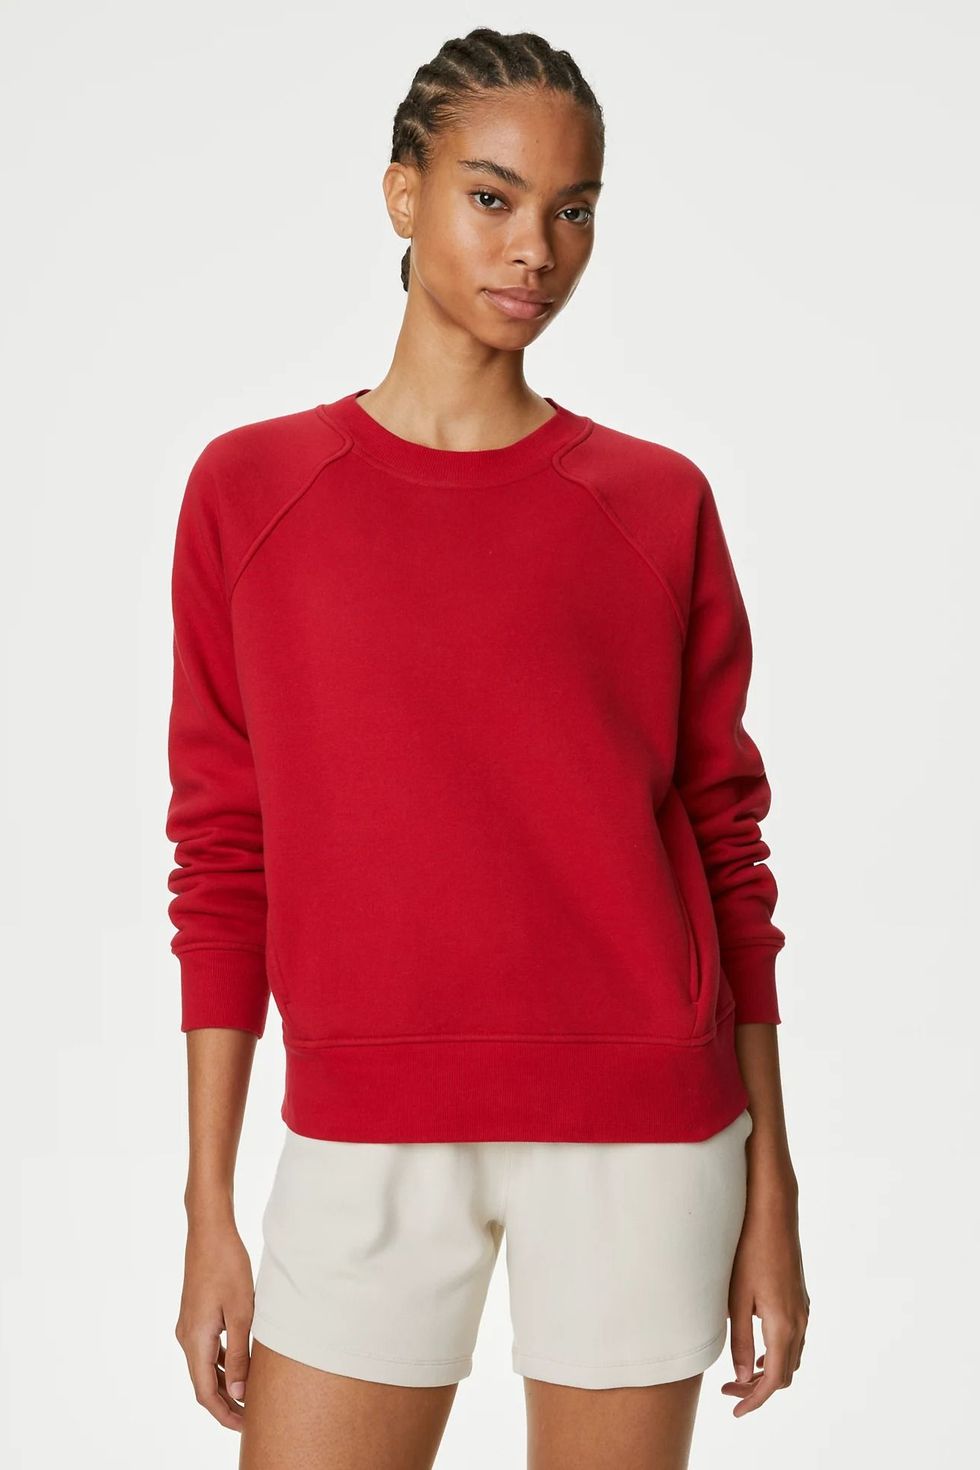 23 Best Sweatshirts For Women To Buy In 2023